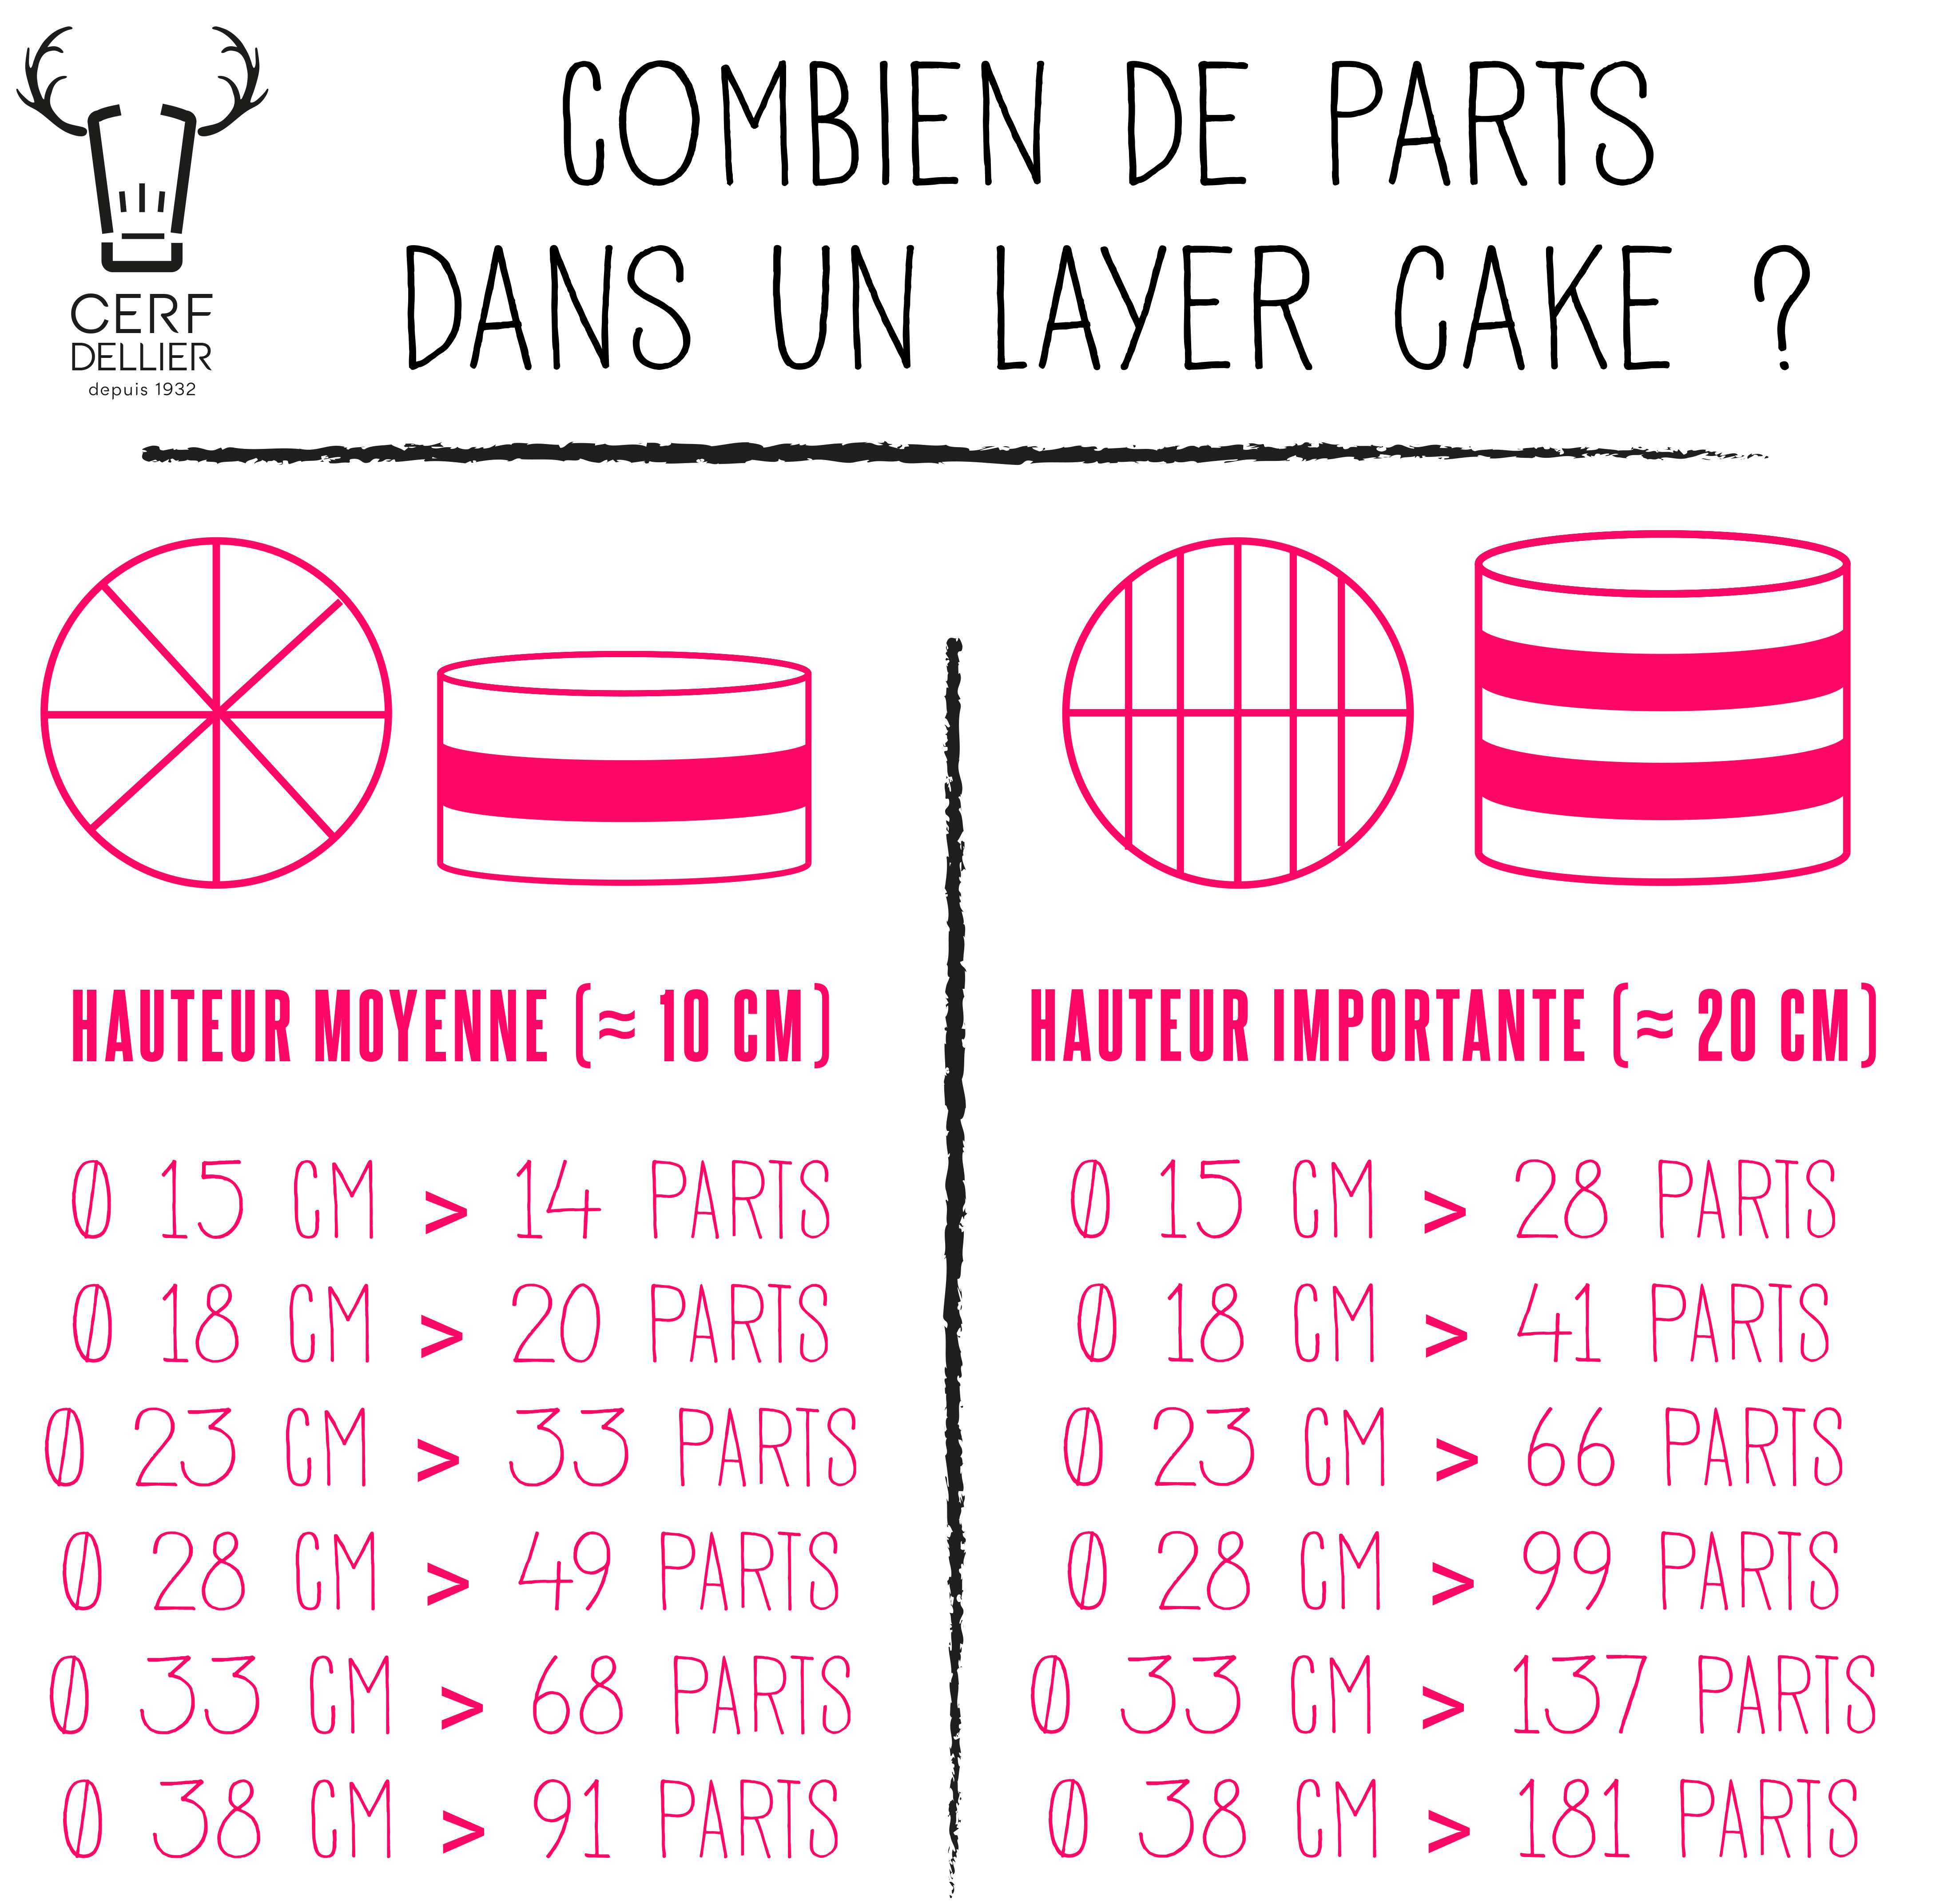 Infographie_Combien_de_parts_dans_un_layer_cake.jpg